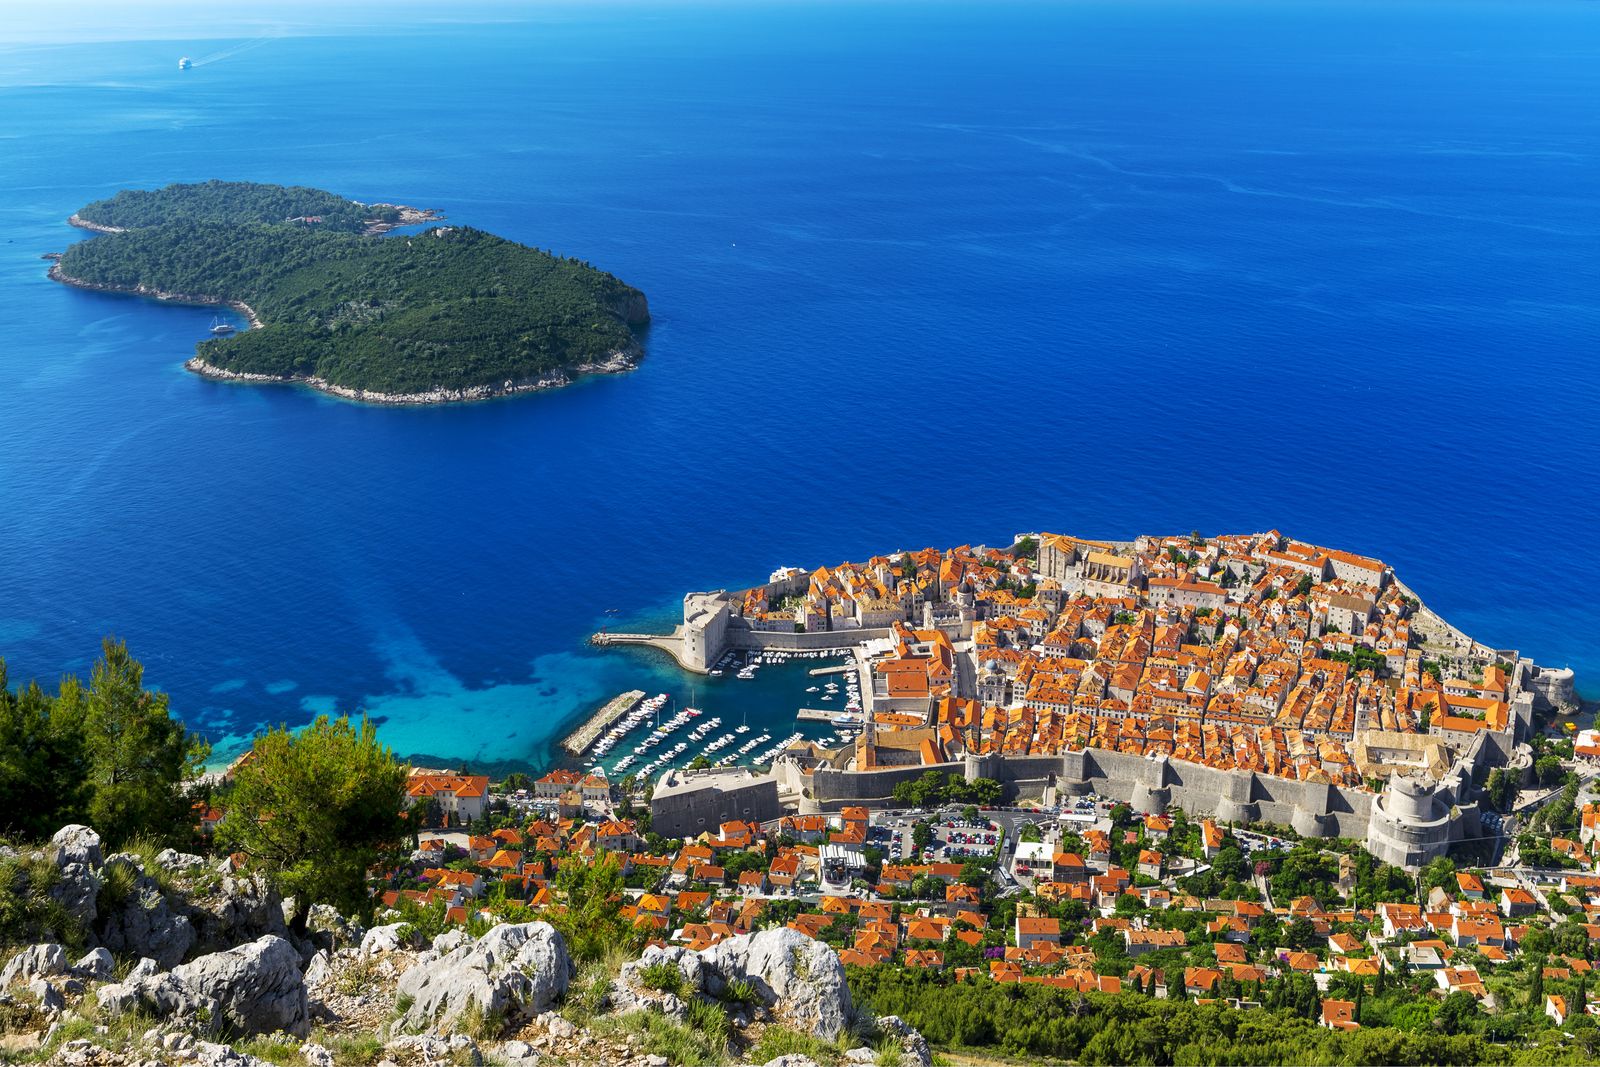 Ghid de calatorie Dubrovnik, Croatia - Perla Adriaticii